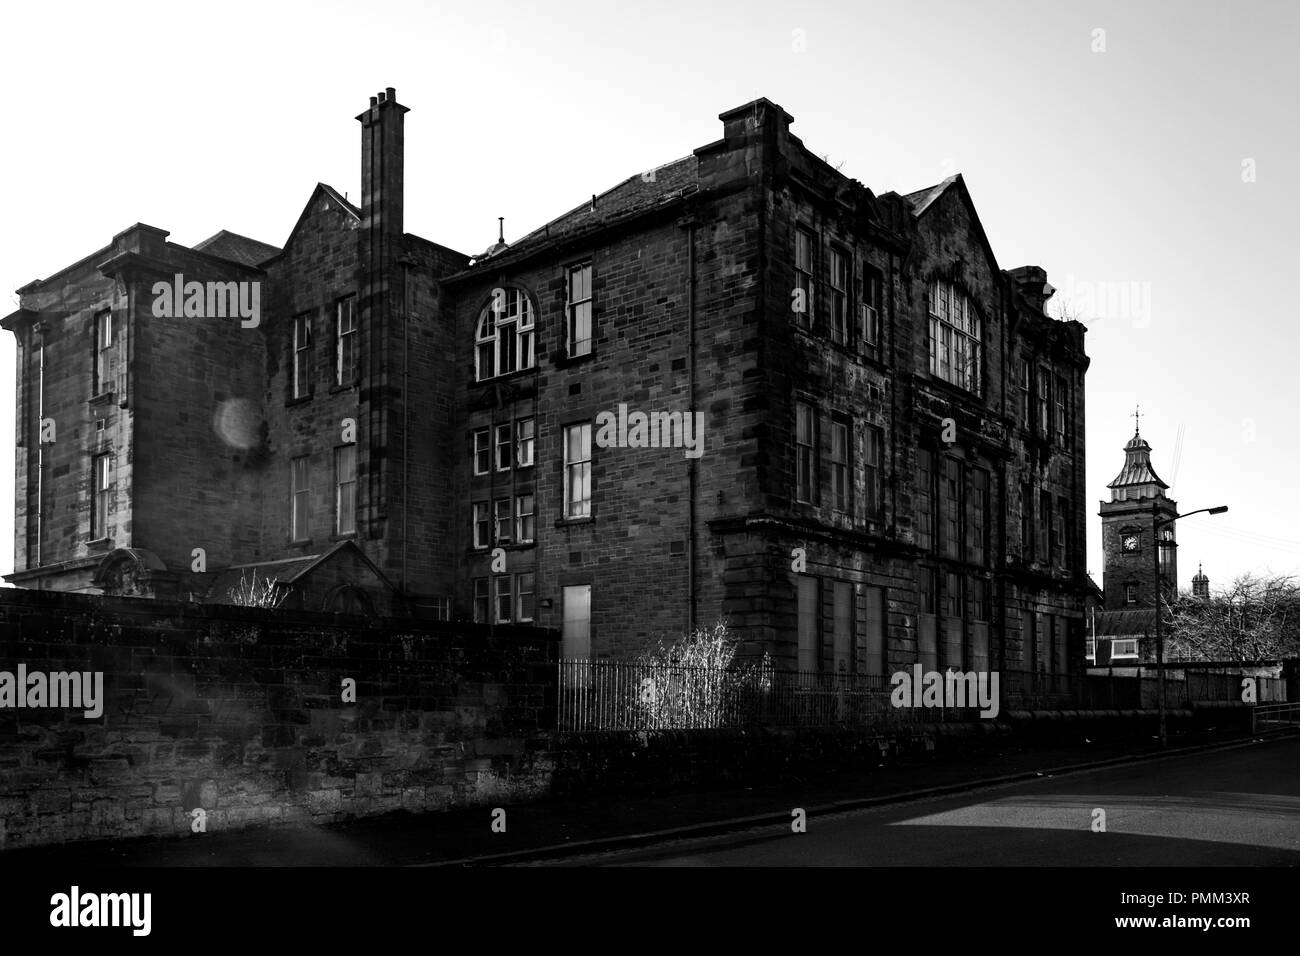 Sir John Maxwell Primary School Taken from Christian Street, Pollokshaws. GLASGOW, SCOTLAND. Stock Photo